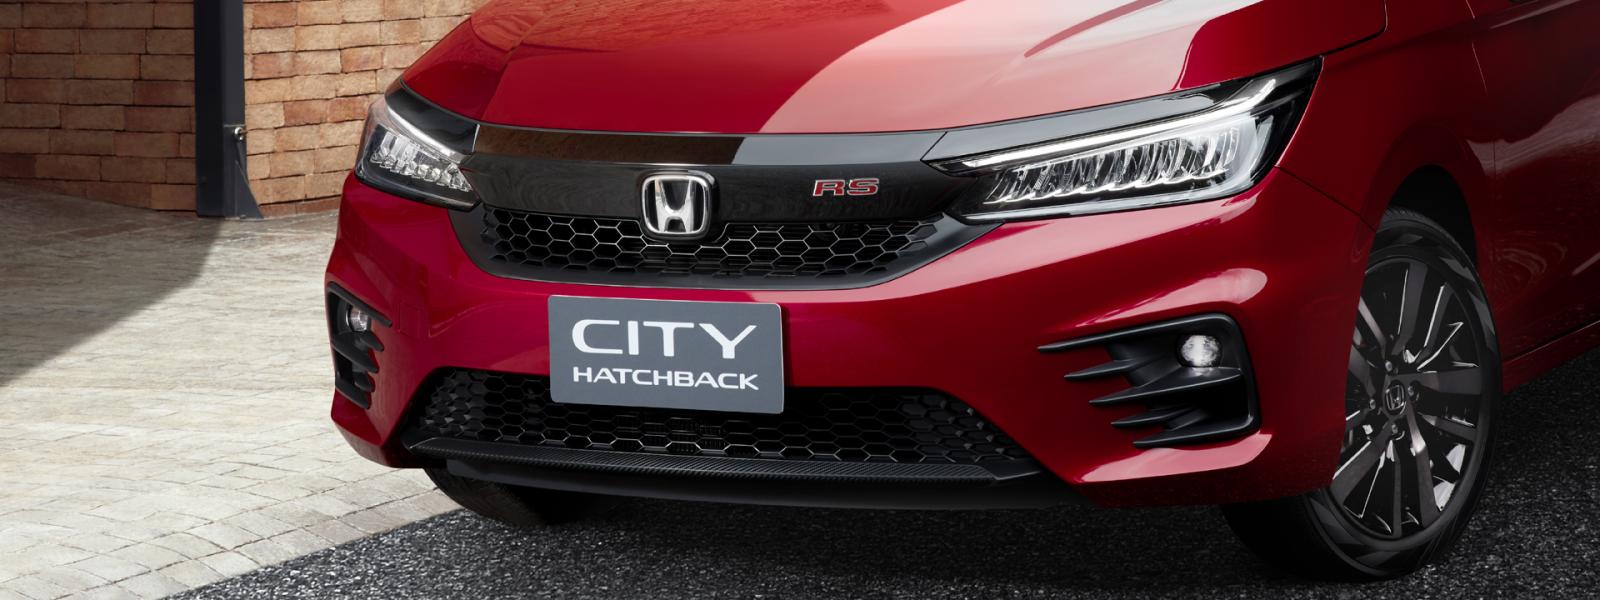 Honda City Hatchback 2021 